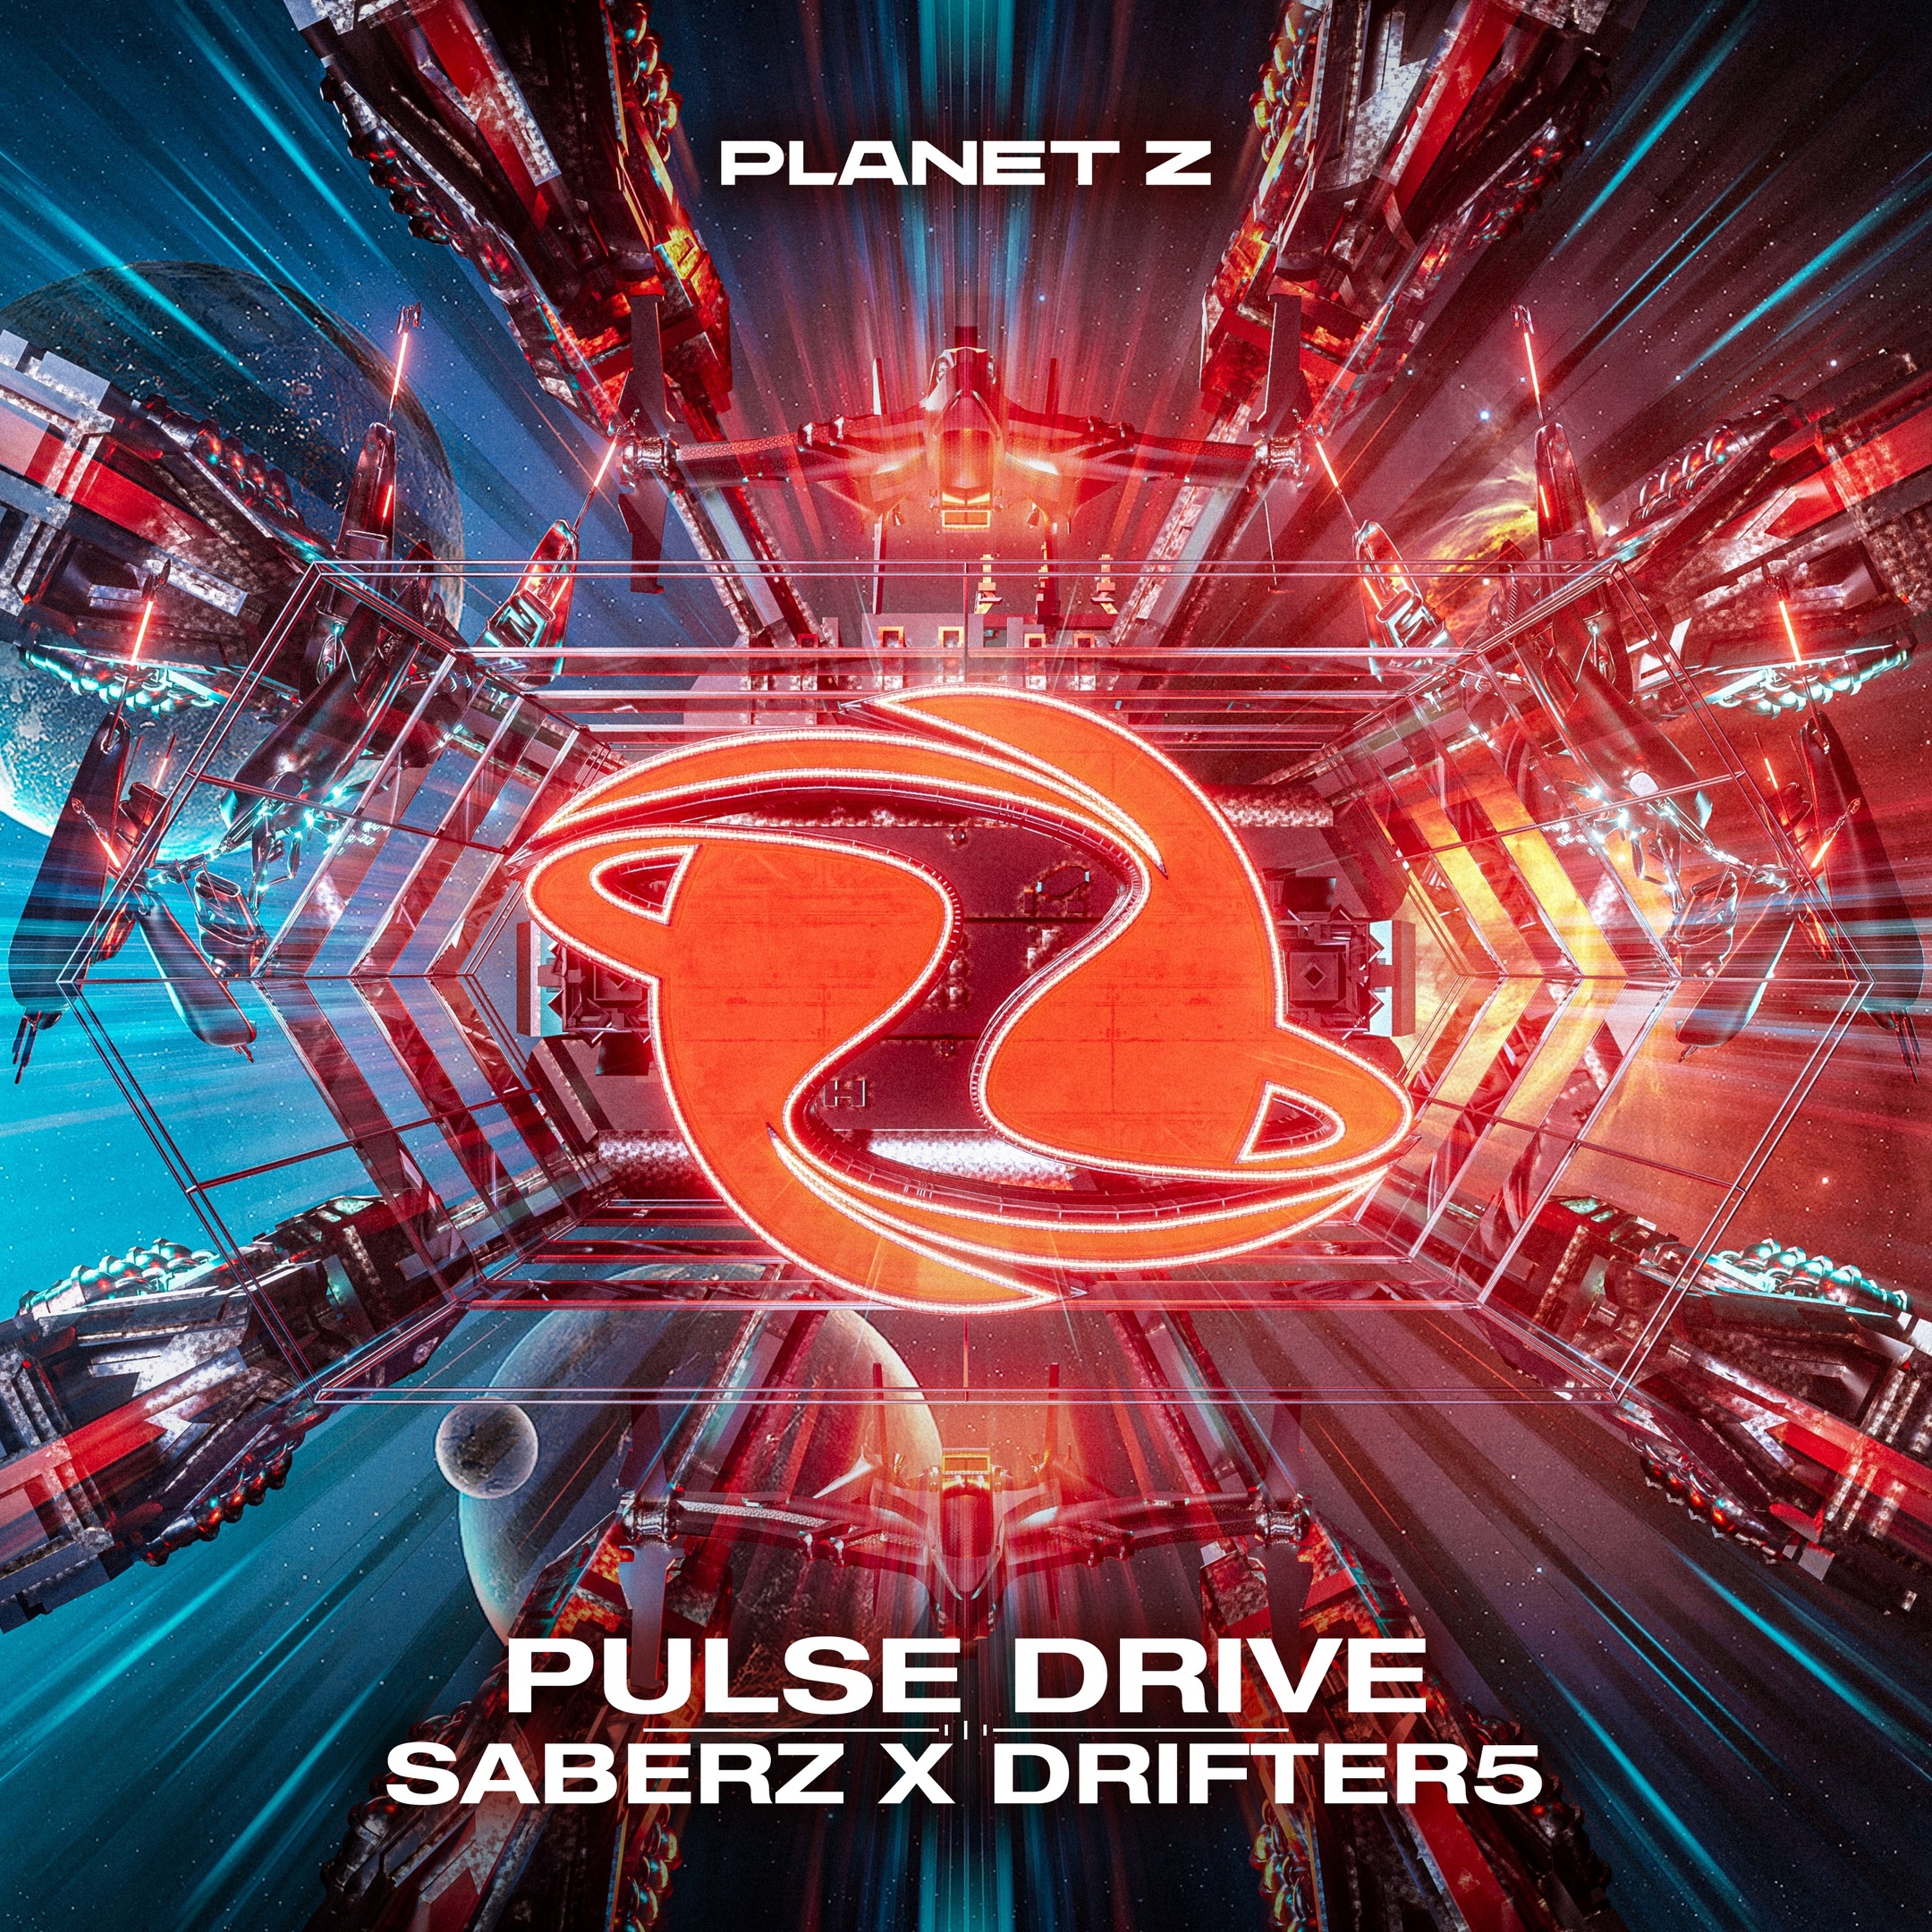 SaberZ & Drifter5 — Pulse Drive cover artwork